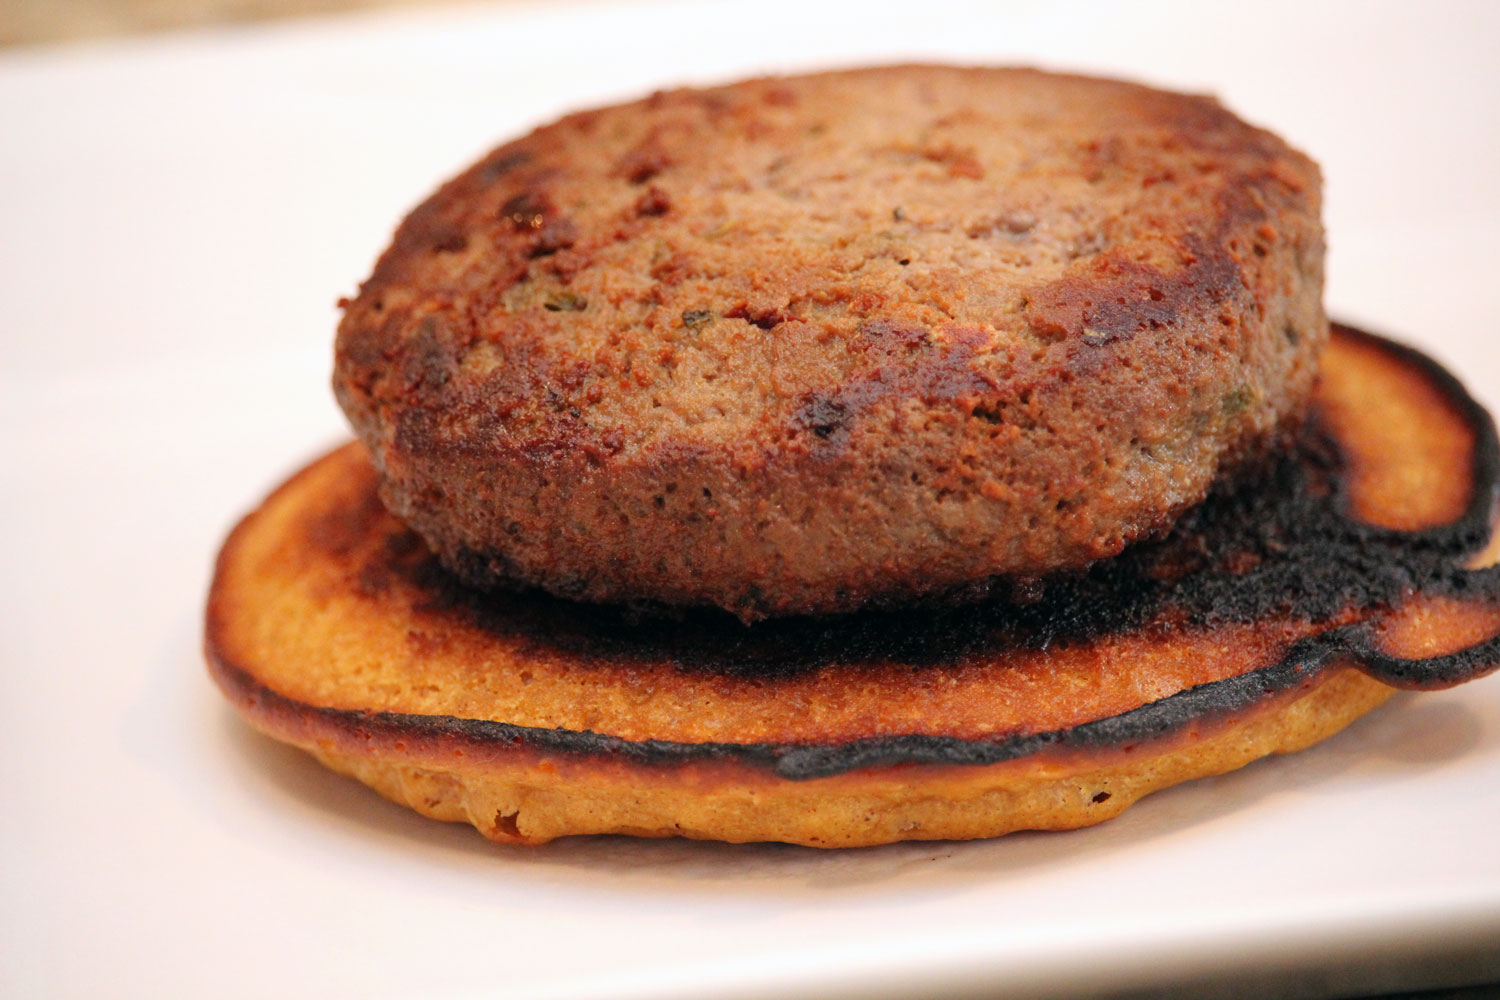 Savory Pancake Breakfast Stacks | Bottles & Banter